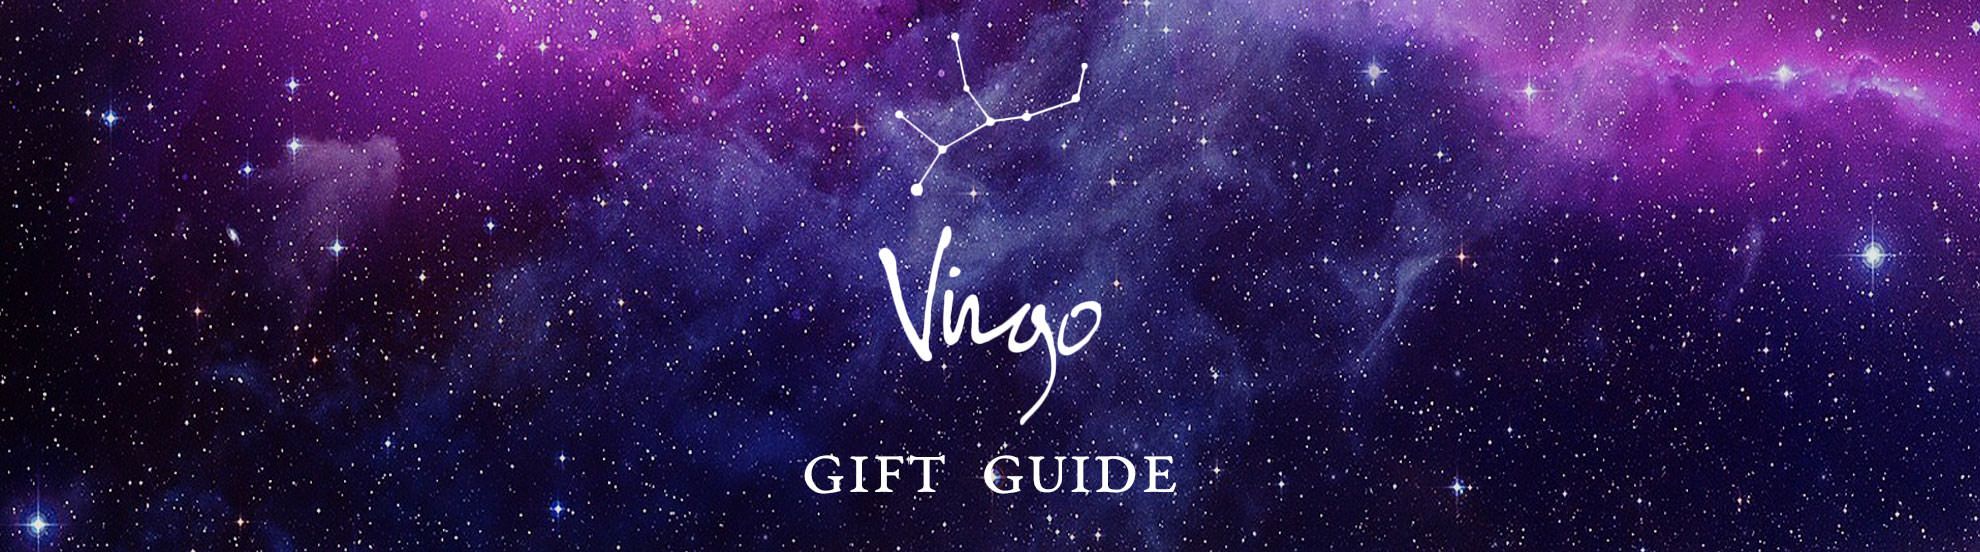 Virgo Gift Guide Miller Astrology Zone